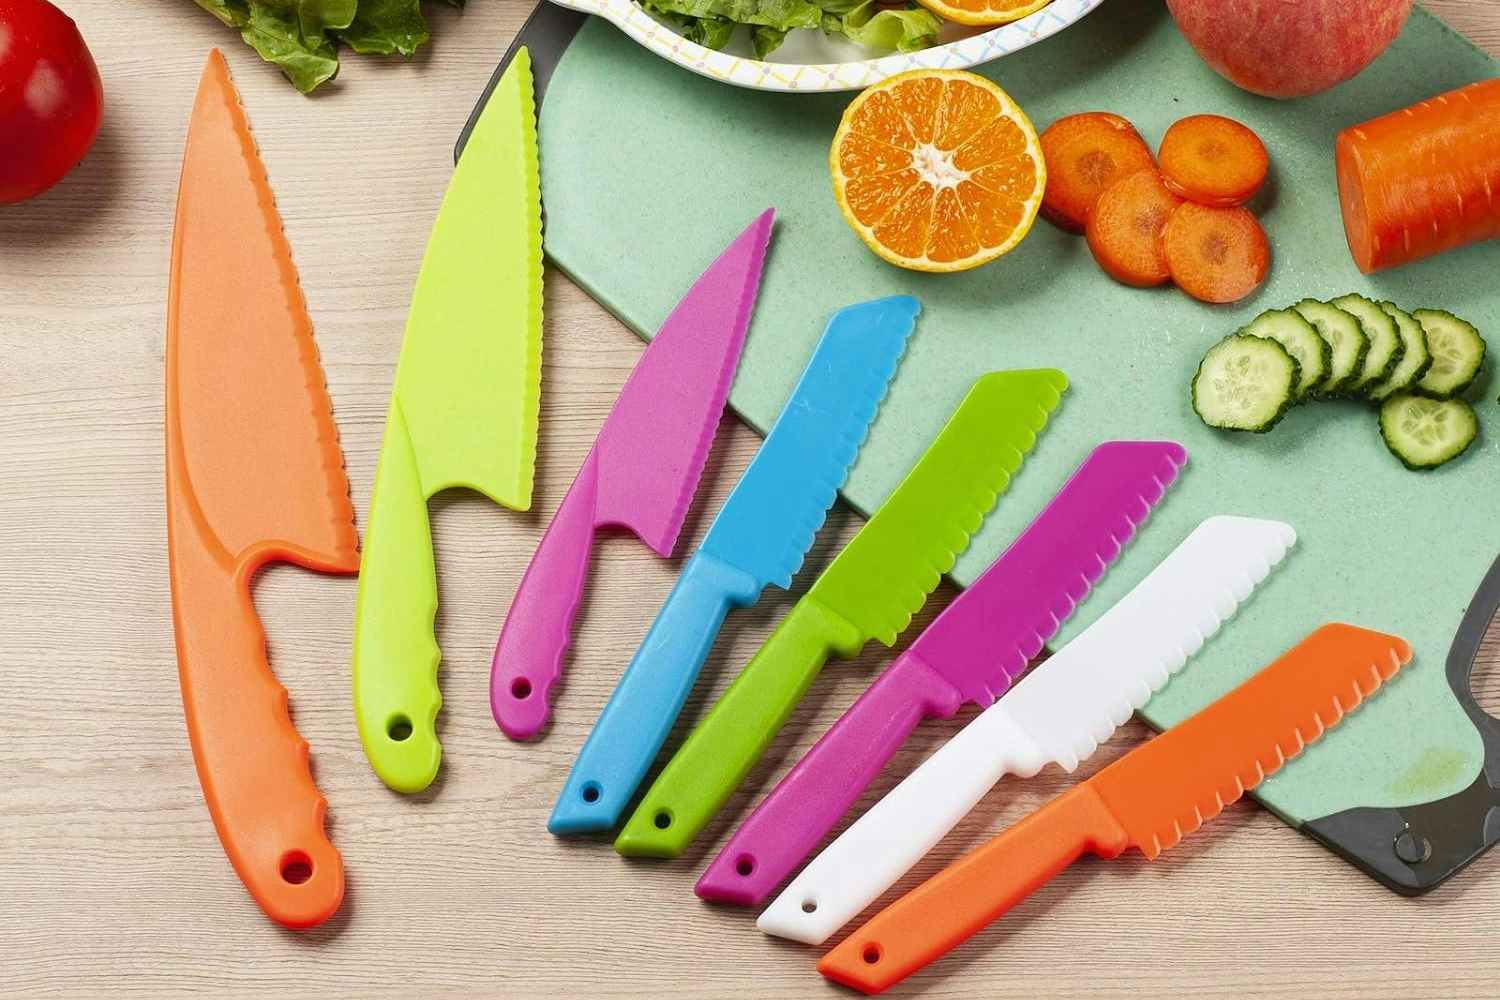 Kids' Nylon Knife Set, Just $5.99 on Amazon